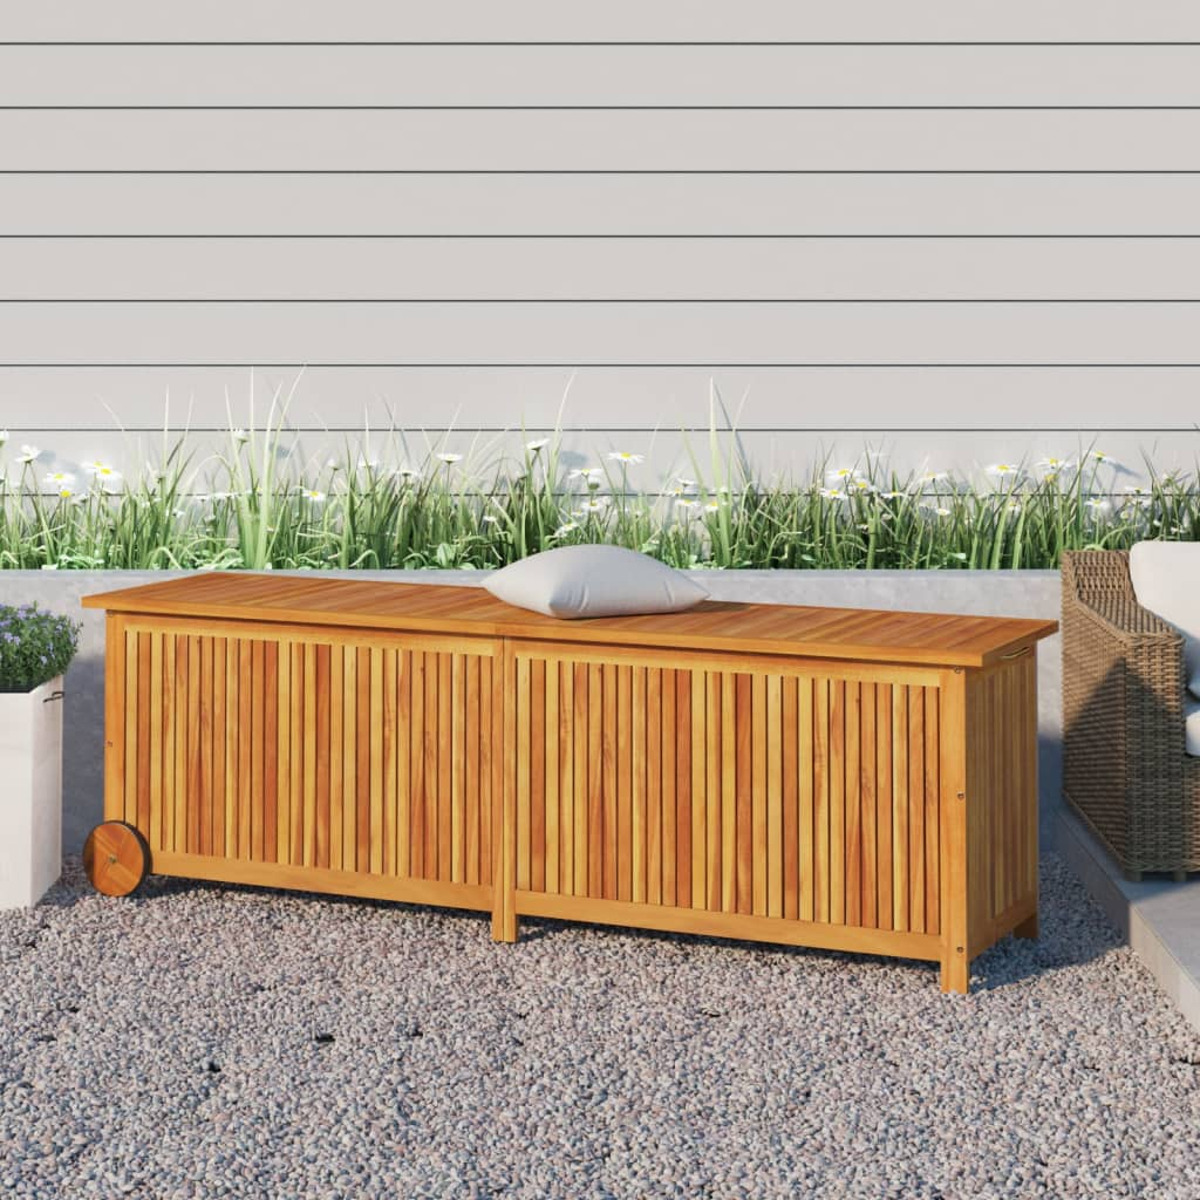 VIDAXL 319713 Holzfarbe für den Aufbewahrungsbox Garten,